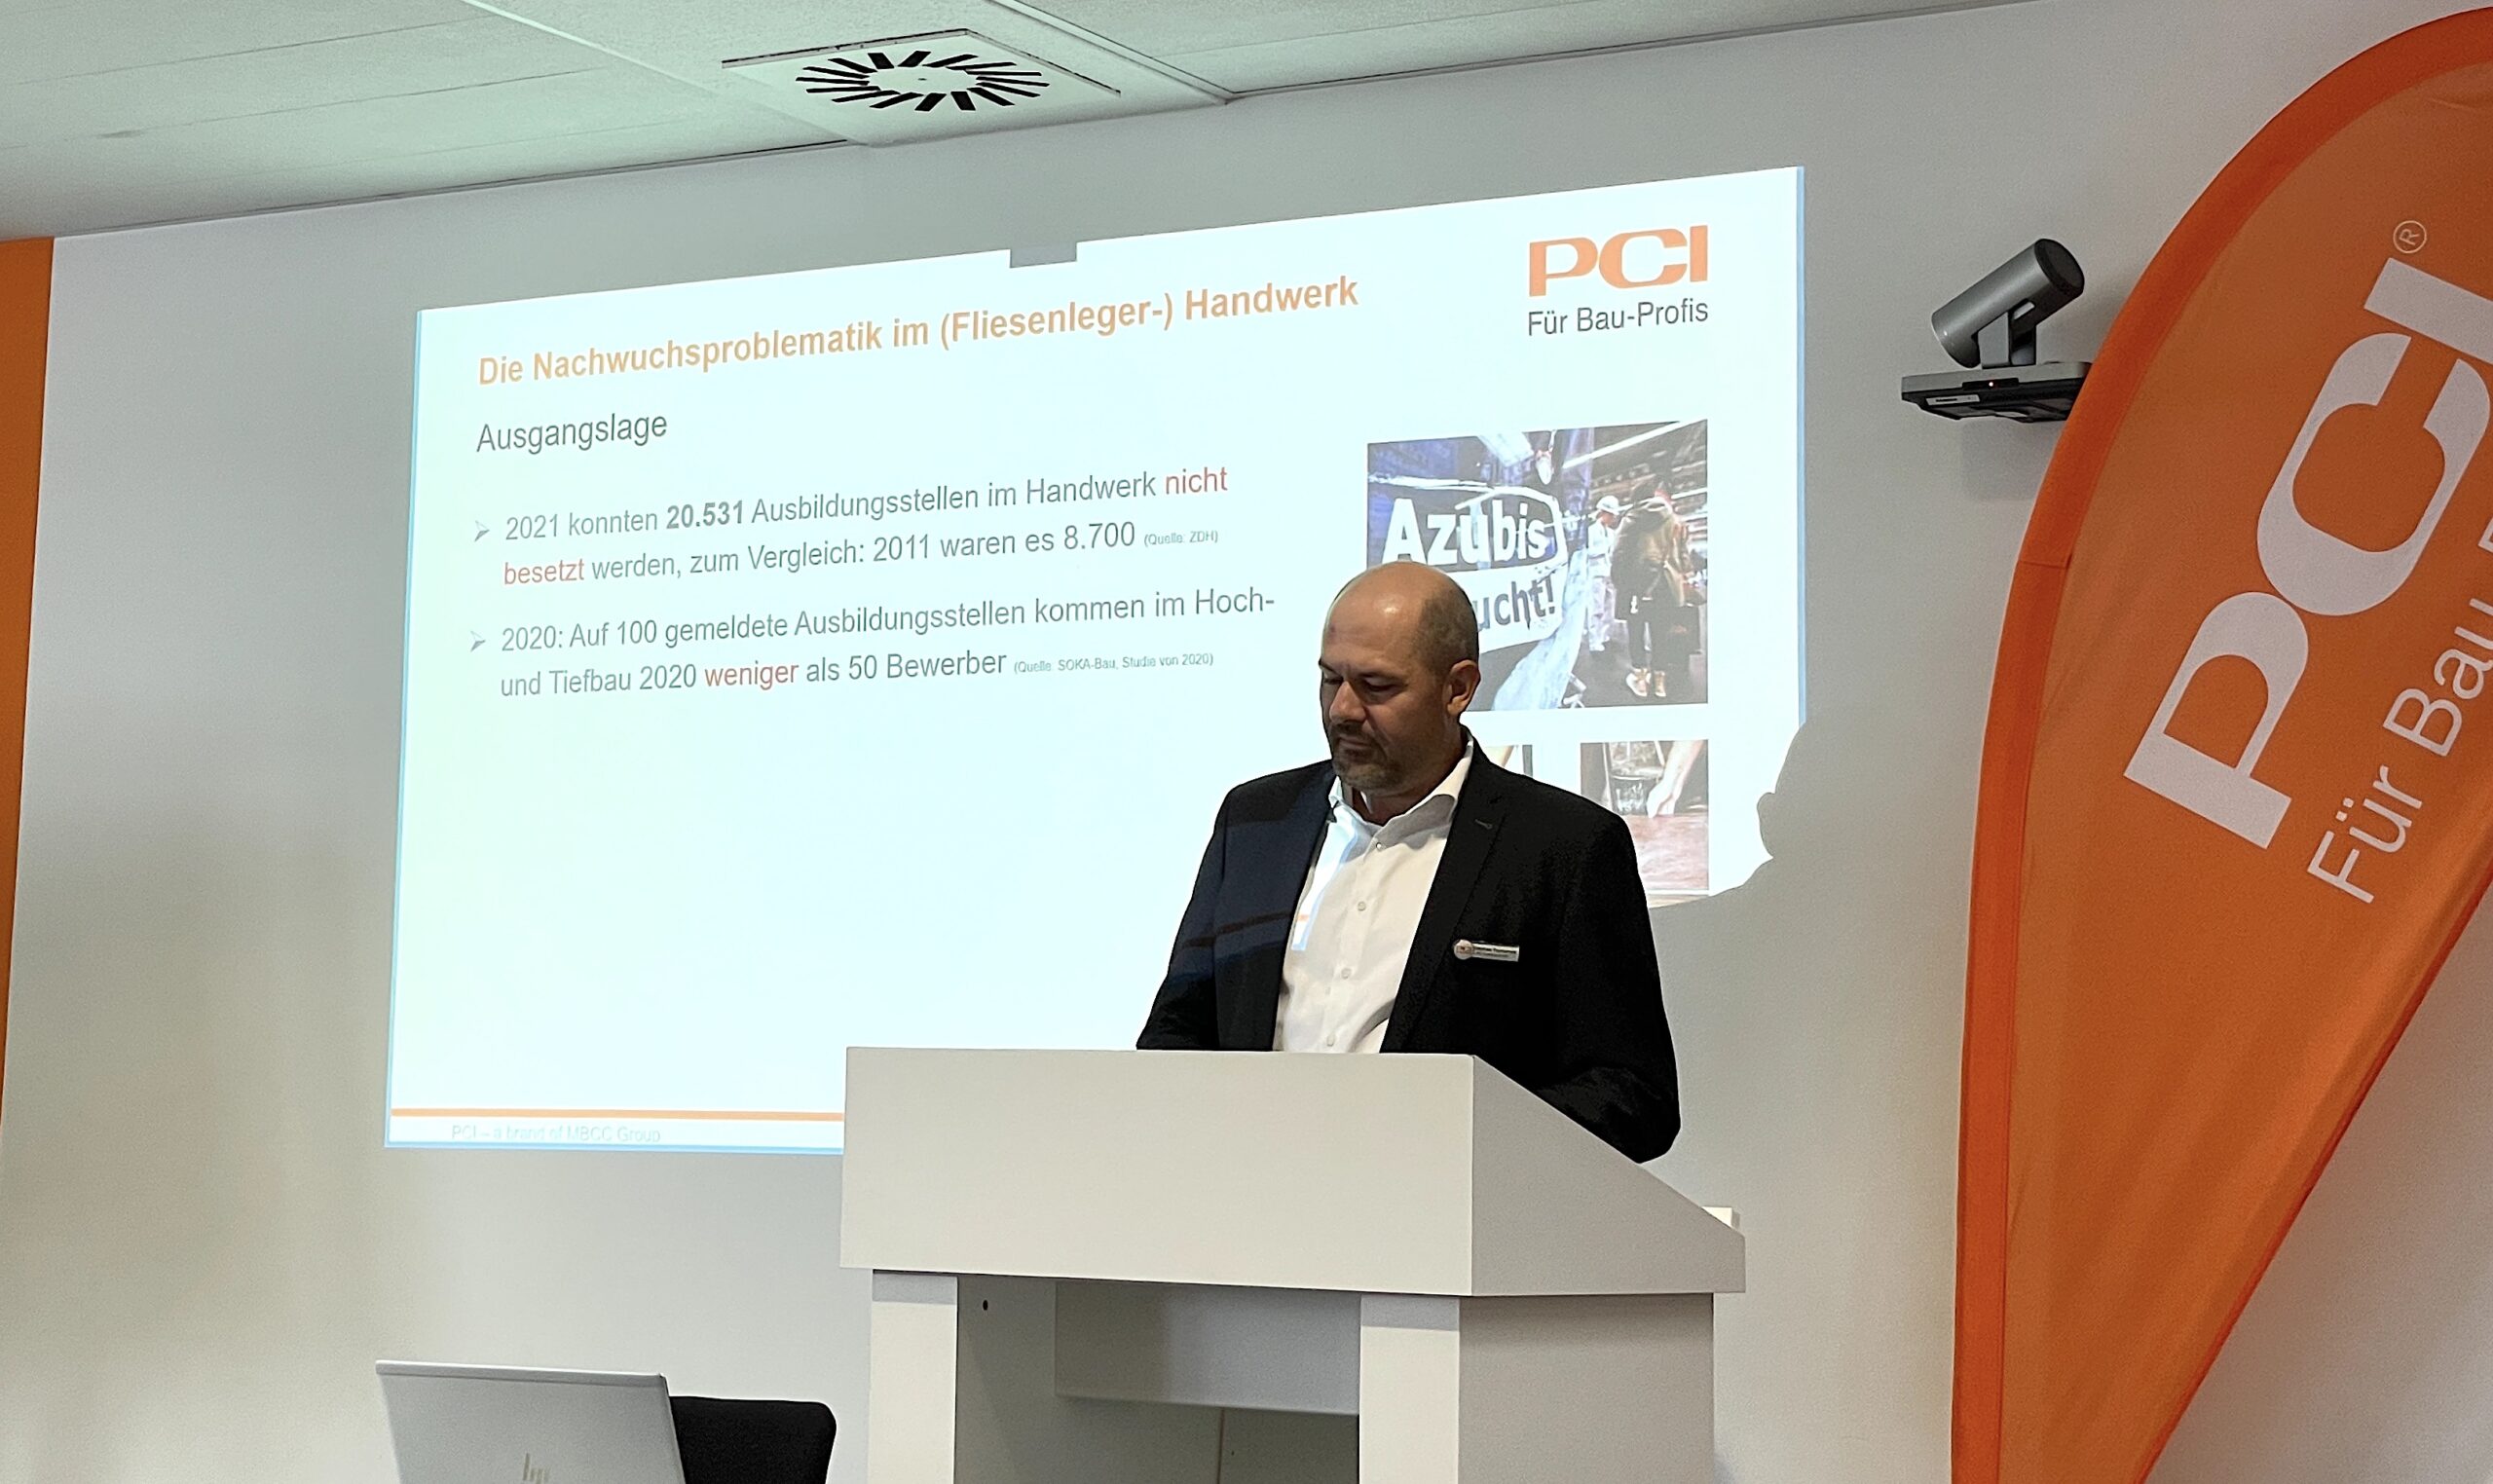 Stephan Tschernek (Leiter Marketing PCI Gruppe) moderierte Diskussionsrunde startete mit einem kurzen Überblick zu den Zahlen und Fakten